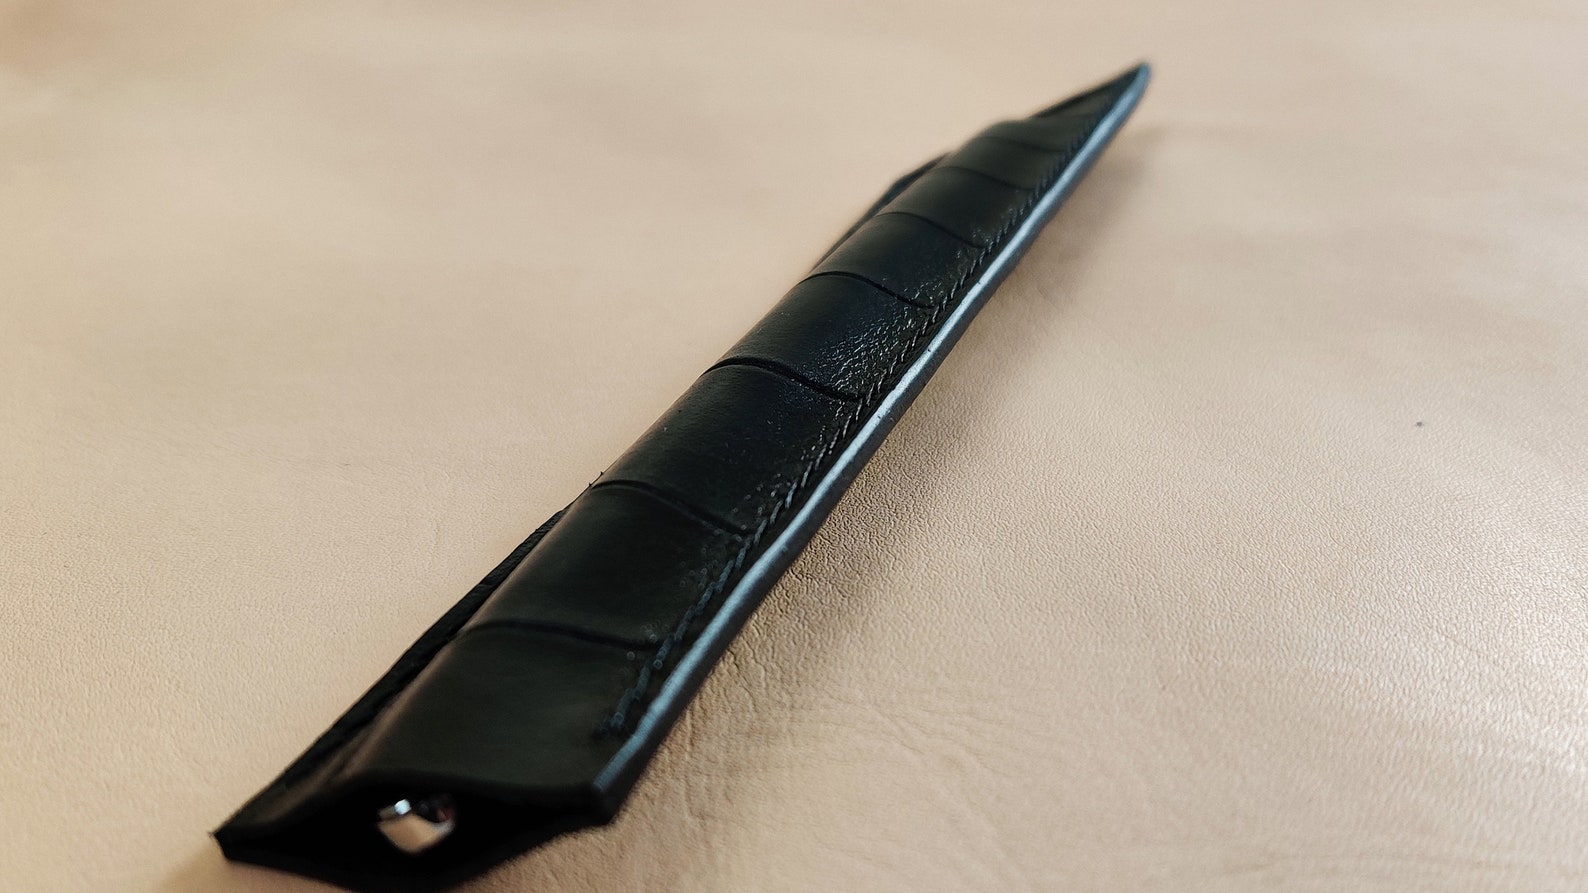 Handmade Katana Leather Pen Sleeve/Sheath with Hermes Thread. | Etsy